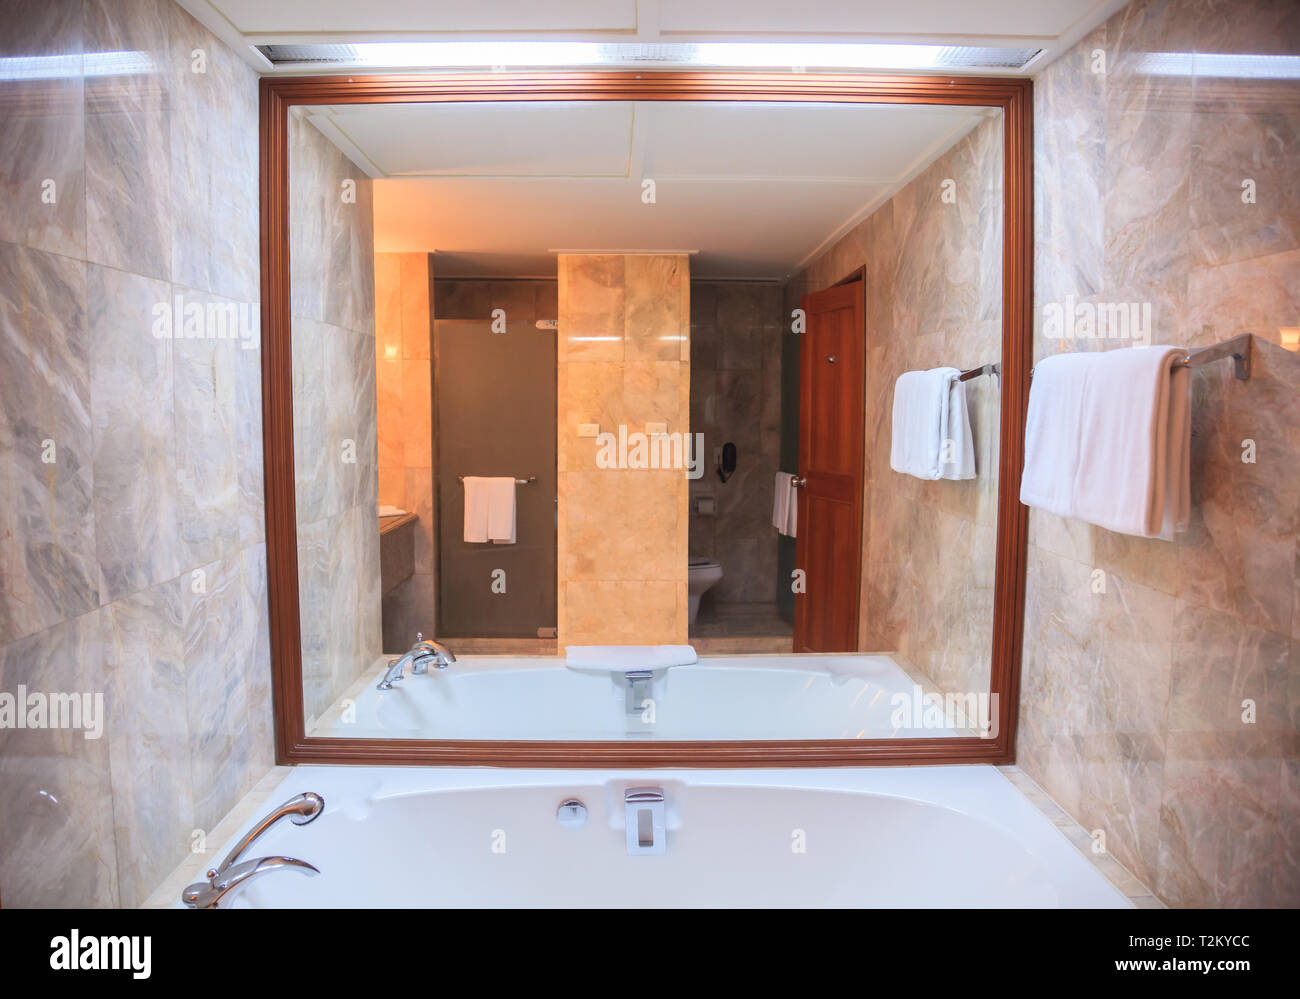 Với thiết kế tiện nghi và nền nẹp đá sang trọng, phòng tắm hiện đại của chúng tôi là một phần của trang trại khách sạn đích thực. Không gian tắm tuyệt vời này là nơi bạn có thể tận hưởng những giây phút thư giãn và thú vị nhất trong chuyến du lịch của mình. Hãy để ảnh minh họa cho bạn thấy những gì chúng tôi có thể cung cấp.